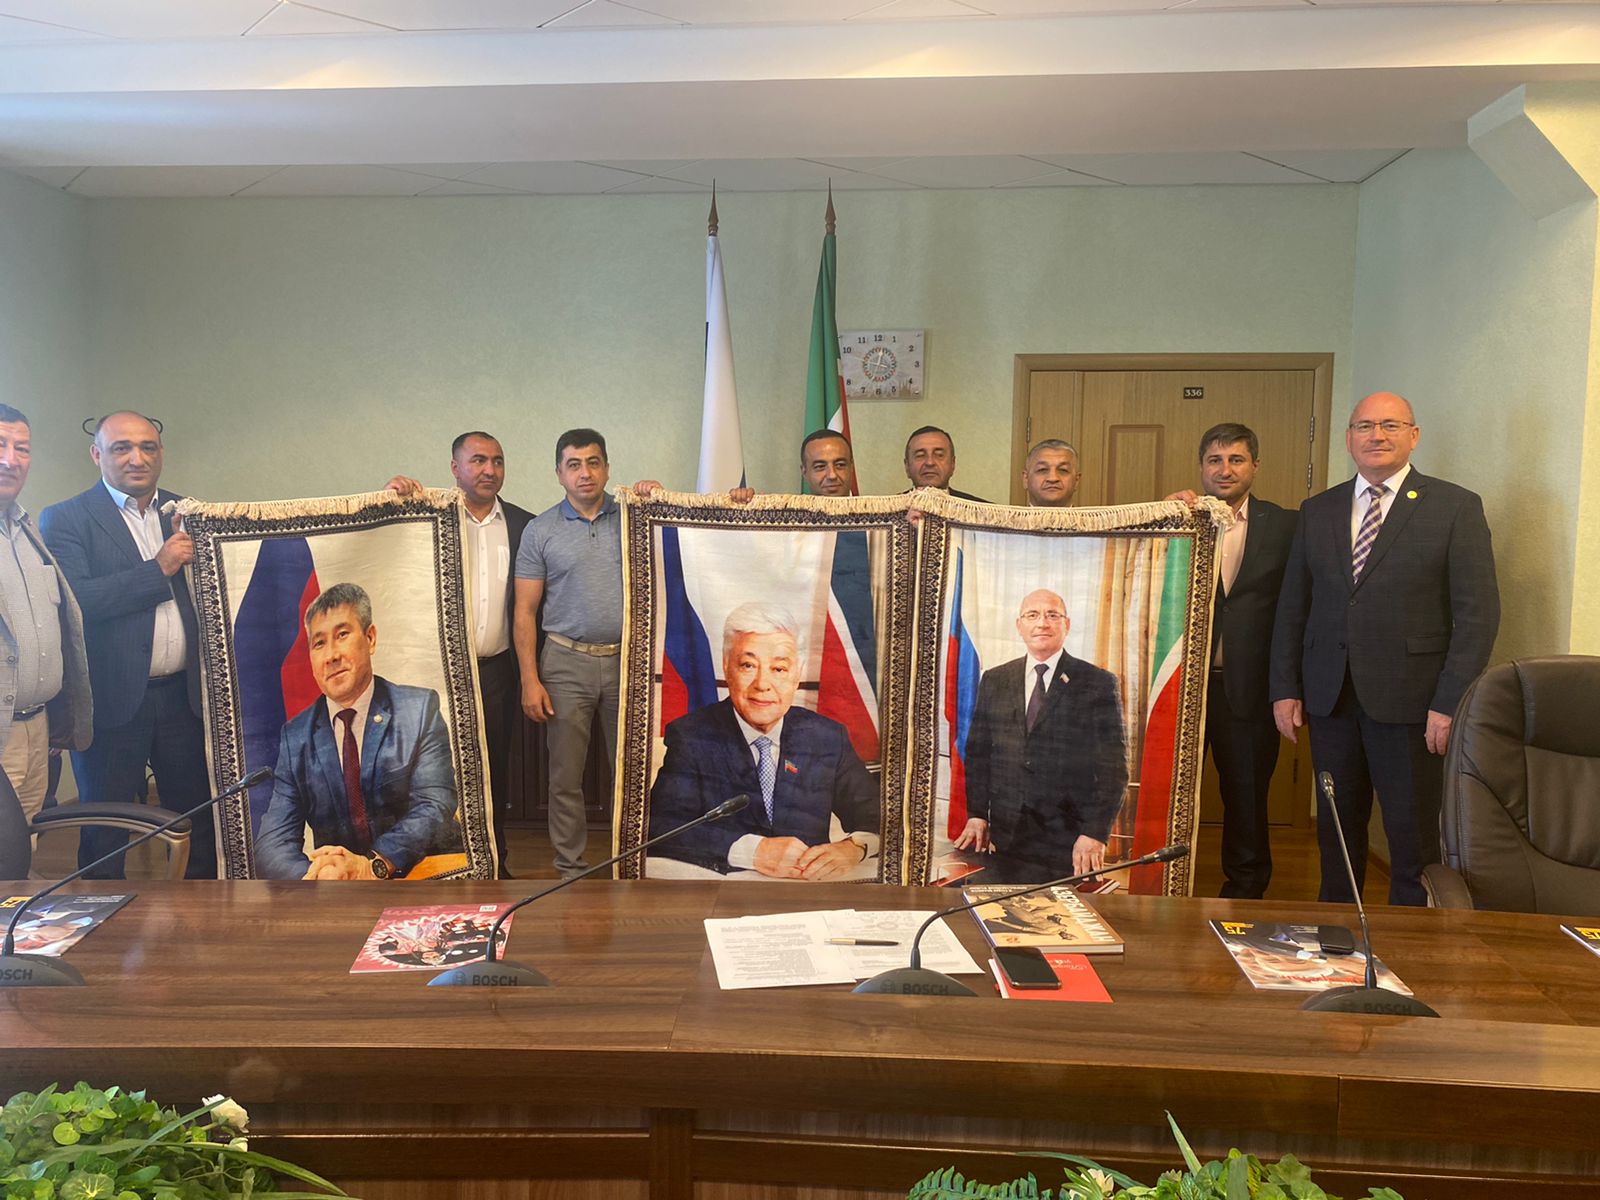 Состоялся официальный визит делегации из представителей «Межрегиональной ассоциации азербайджанцев России» в Республику Татарстан